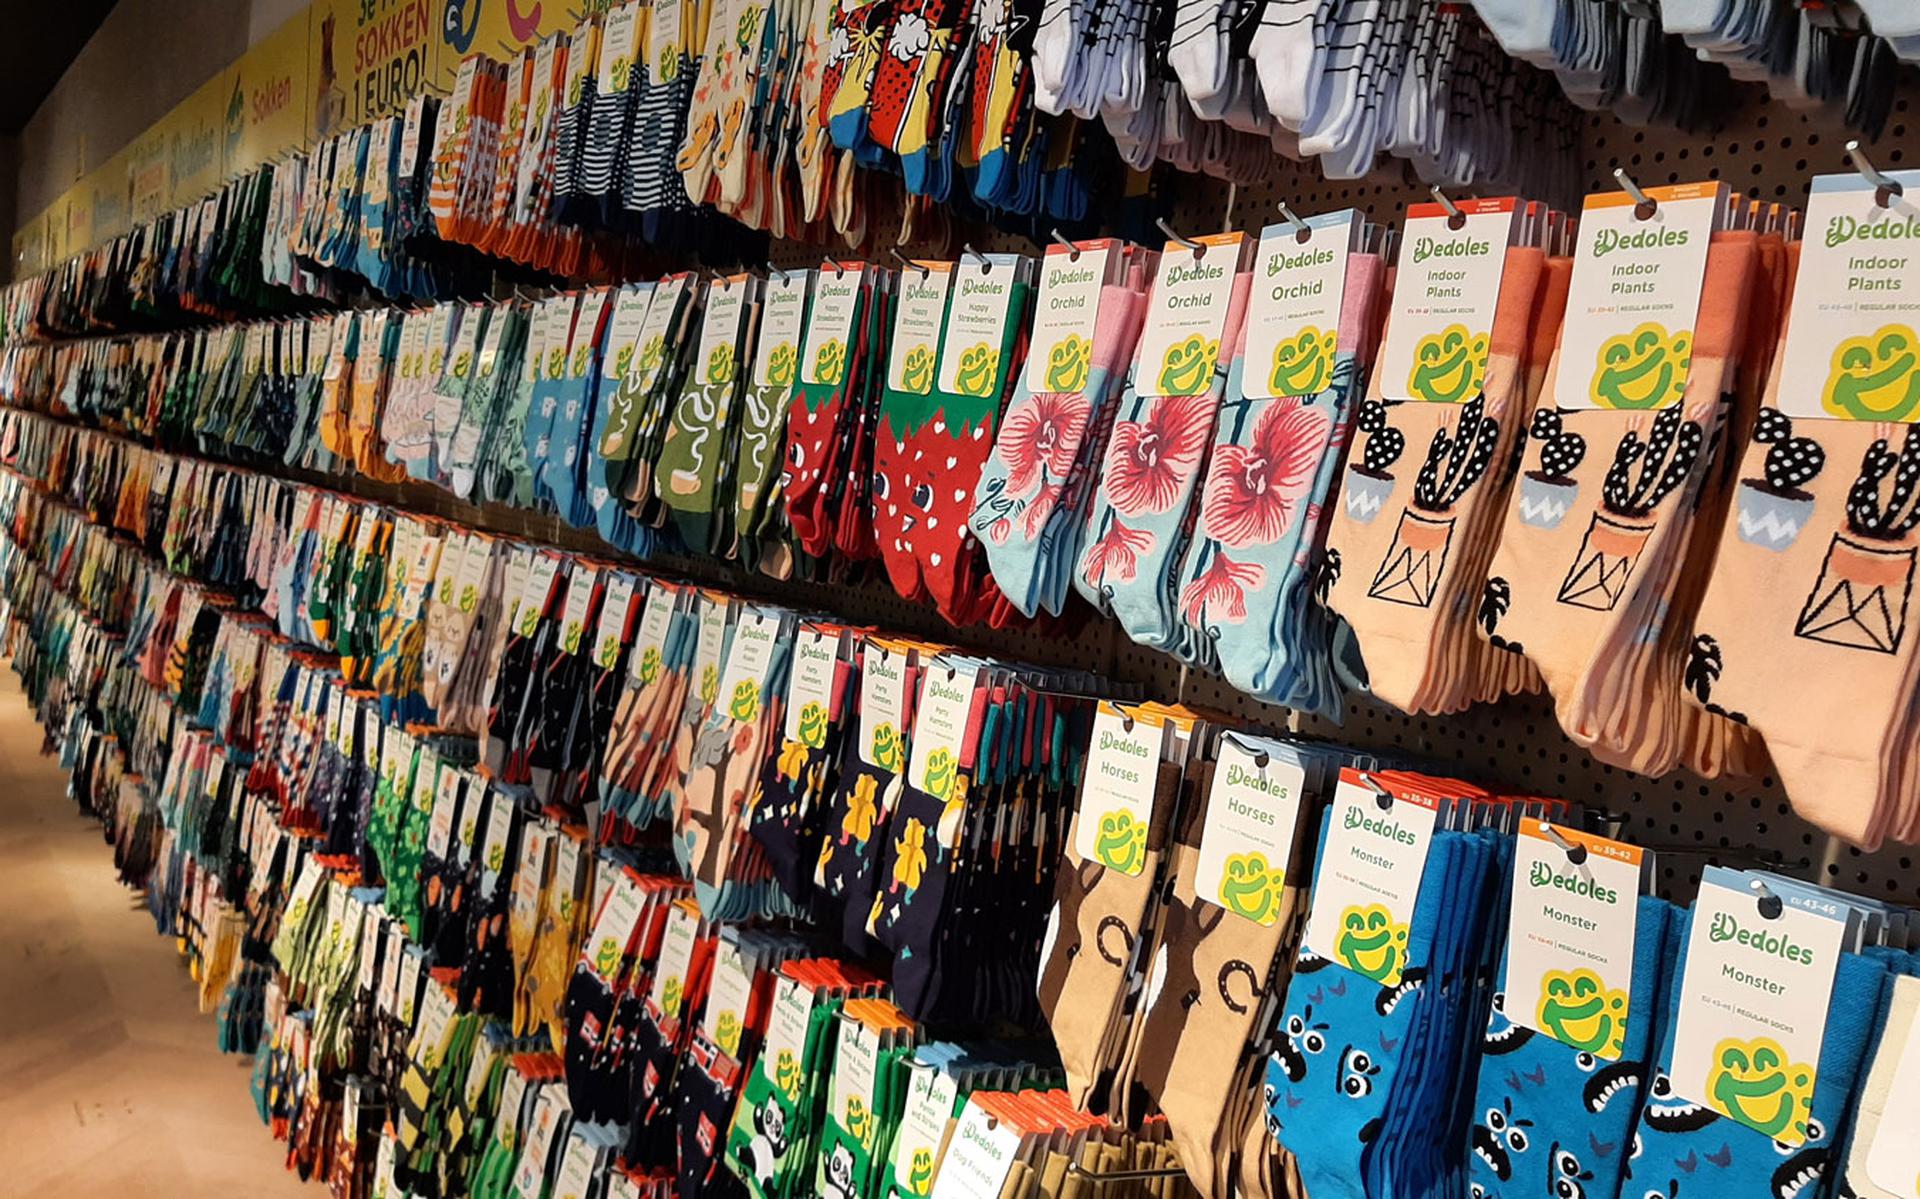 Dedoles verkoopt vooral sokken met opvallende prints.